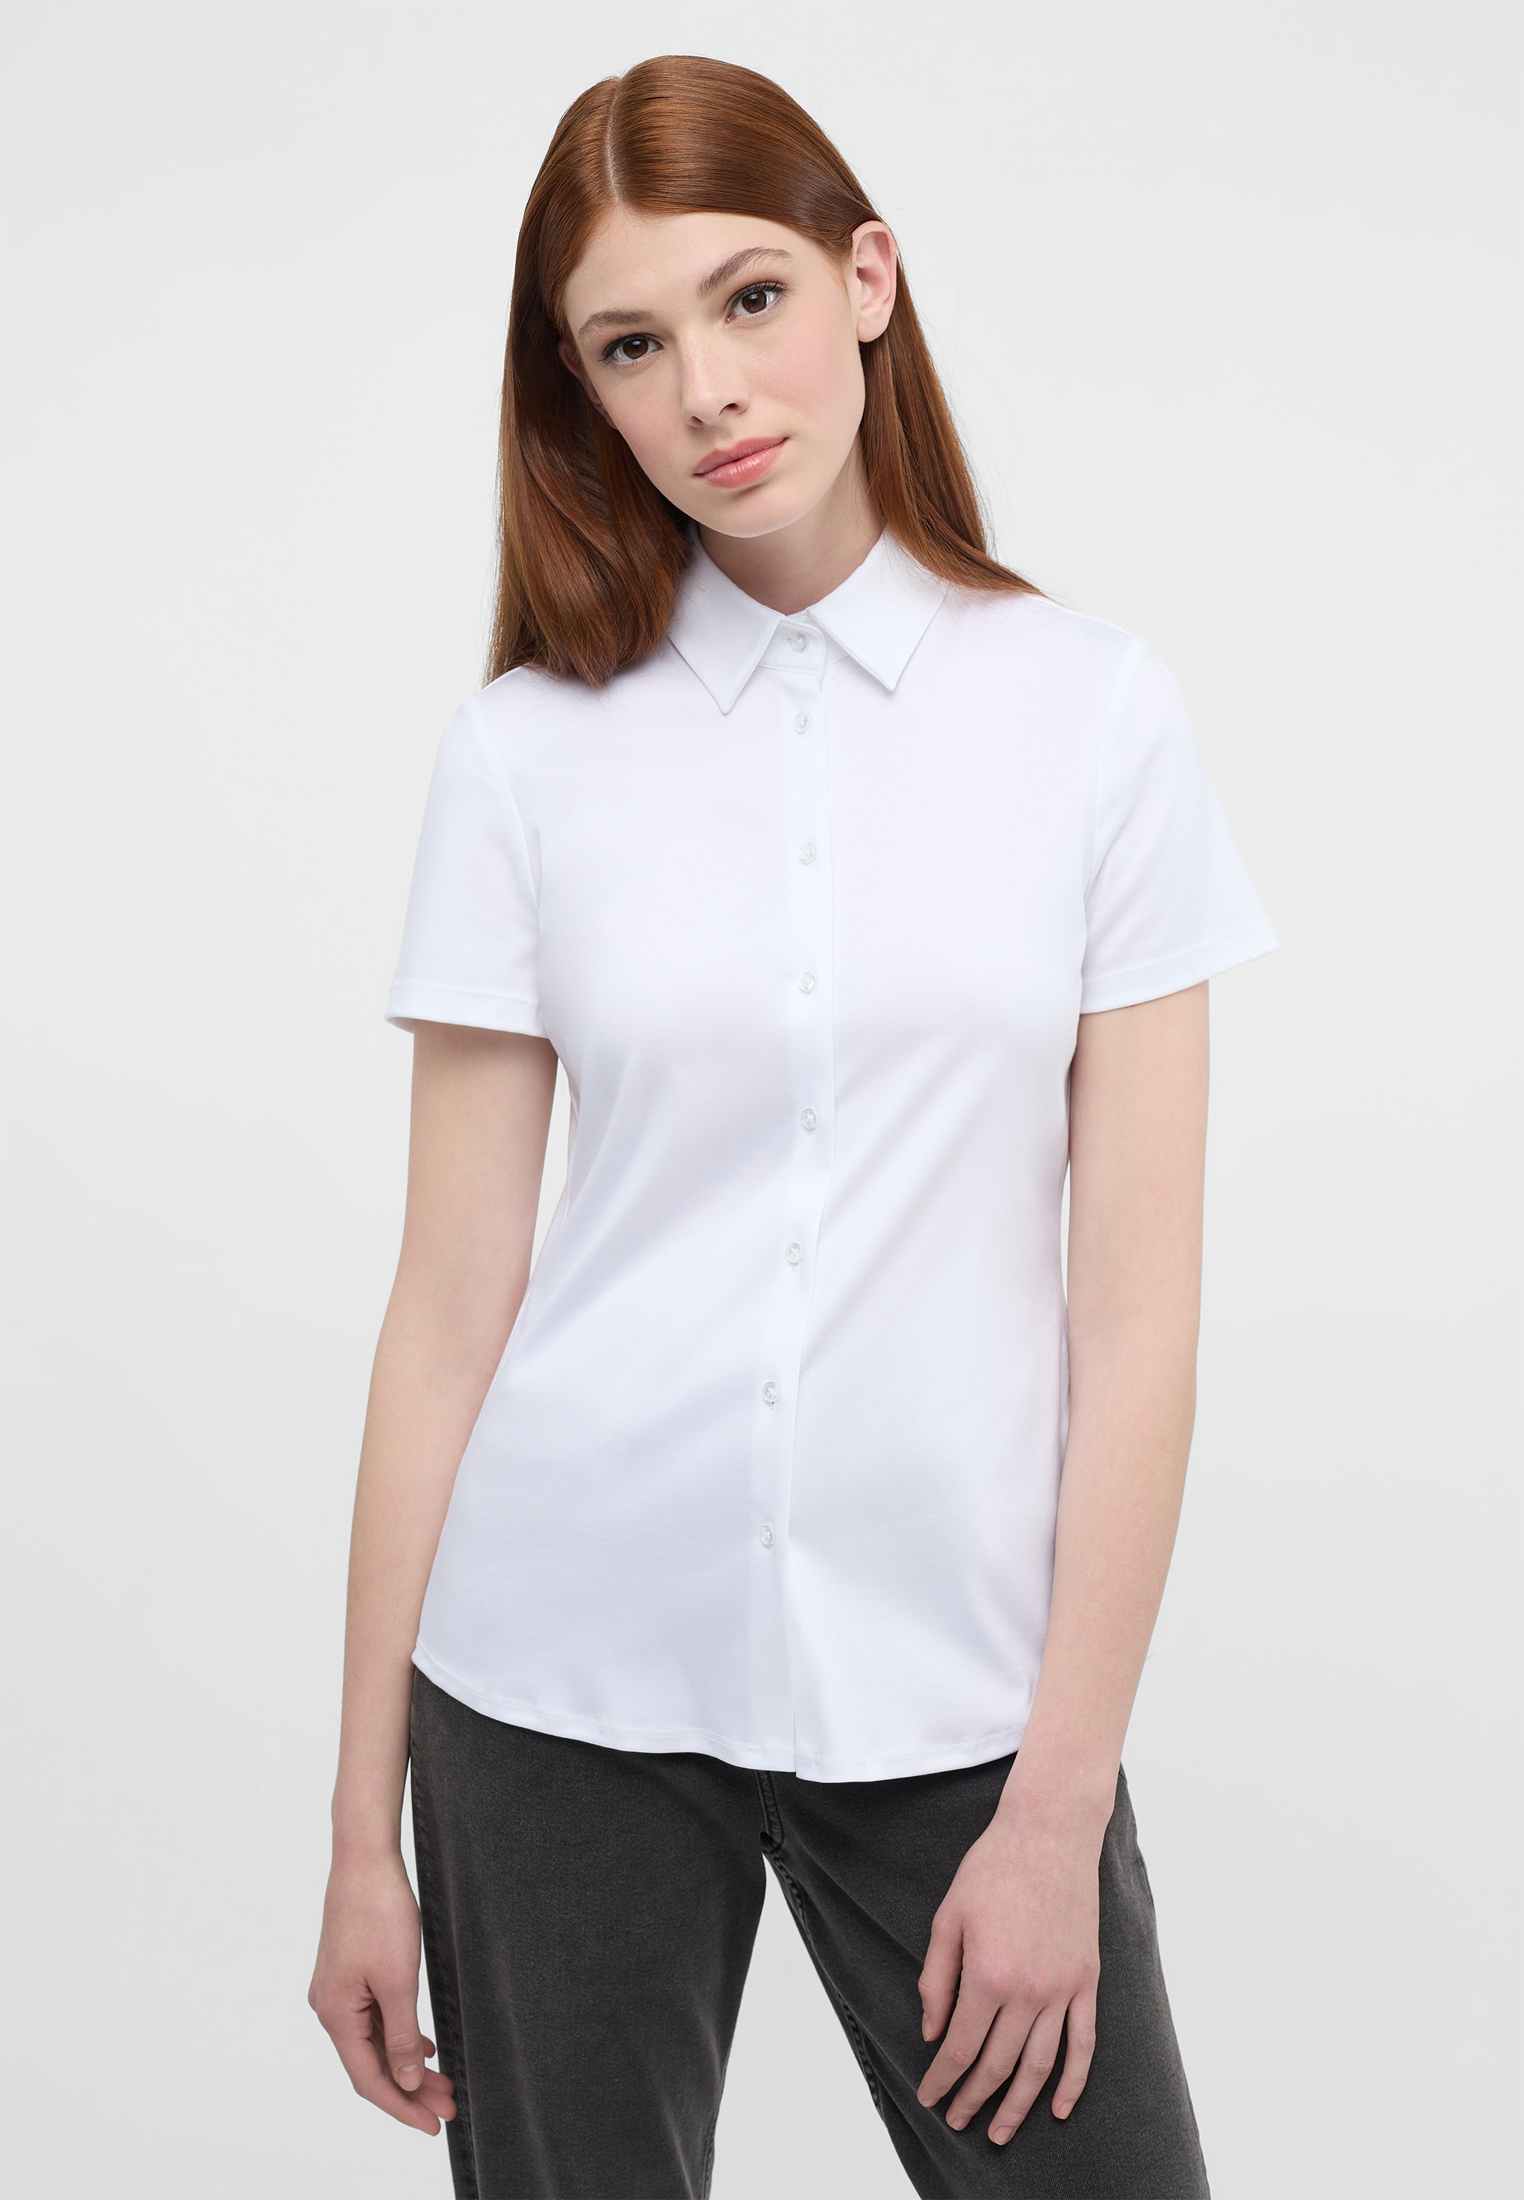 Jersey | short white | sleeve Blouse Shirt 2BL04293-00-01-44-1/2 in plain 44 | white |